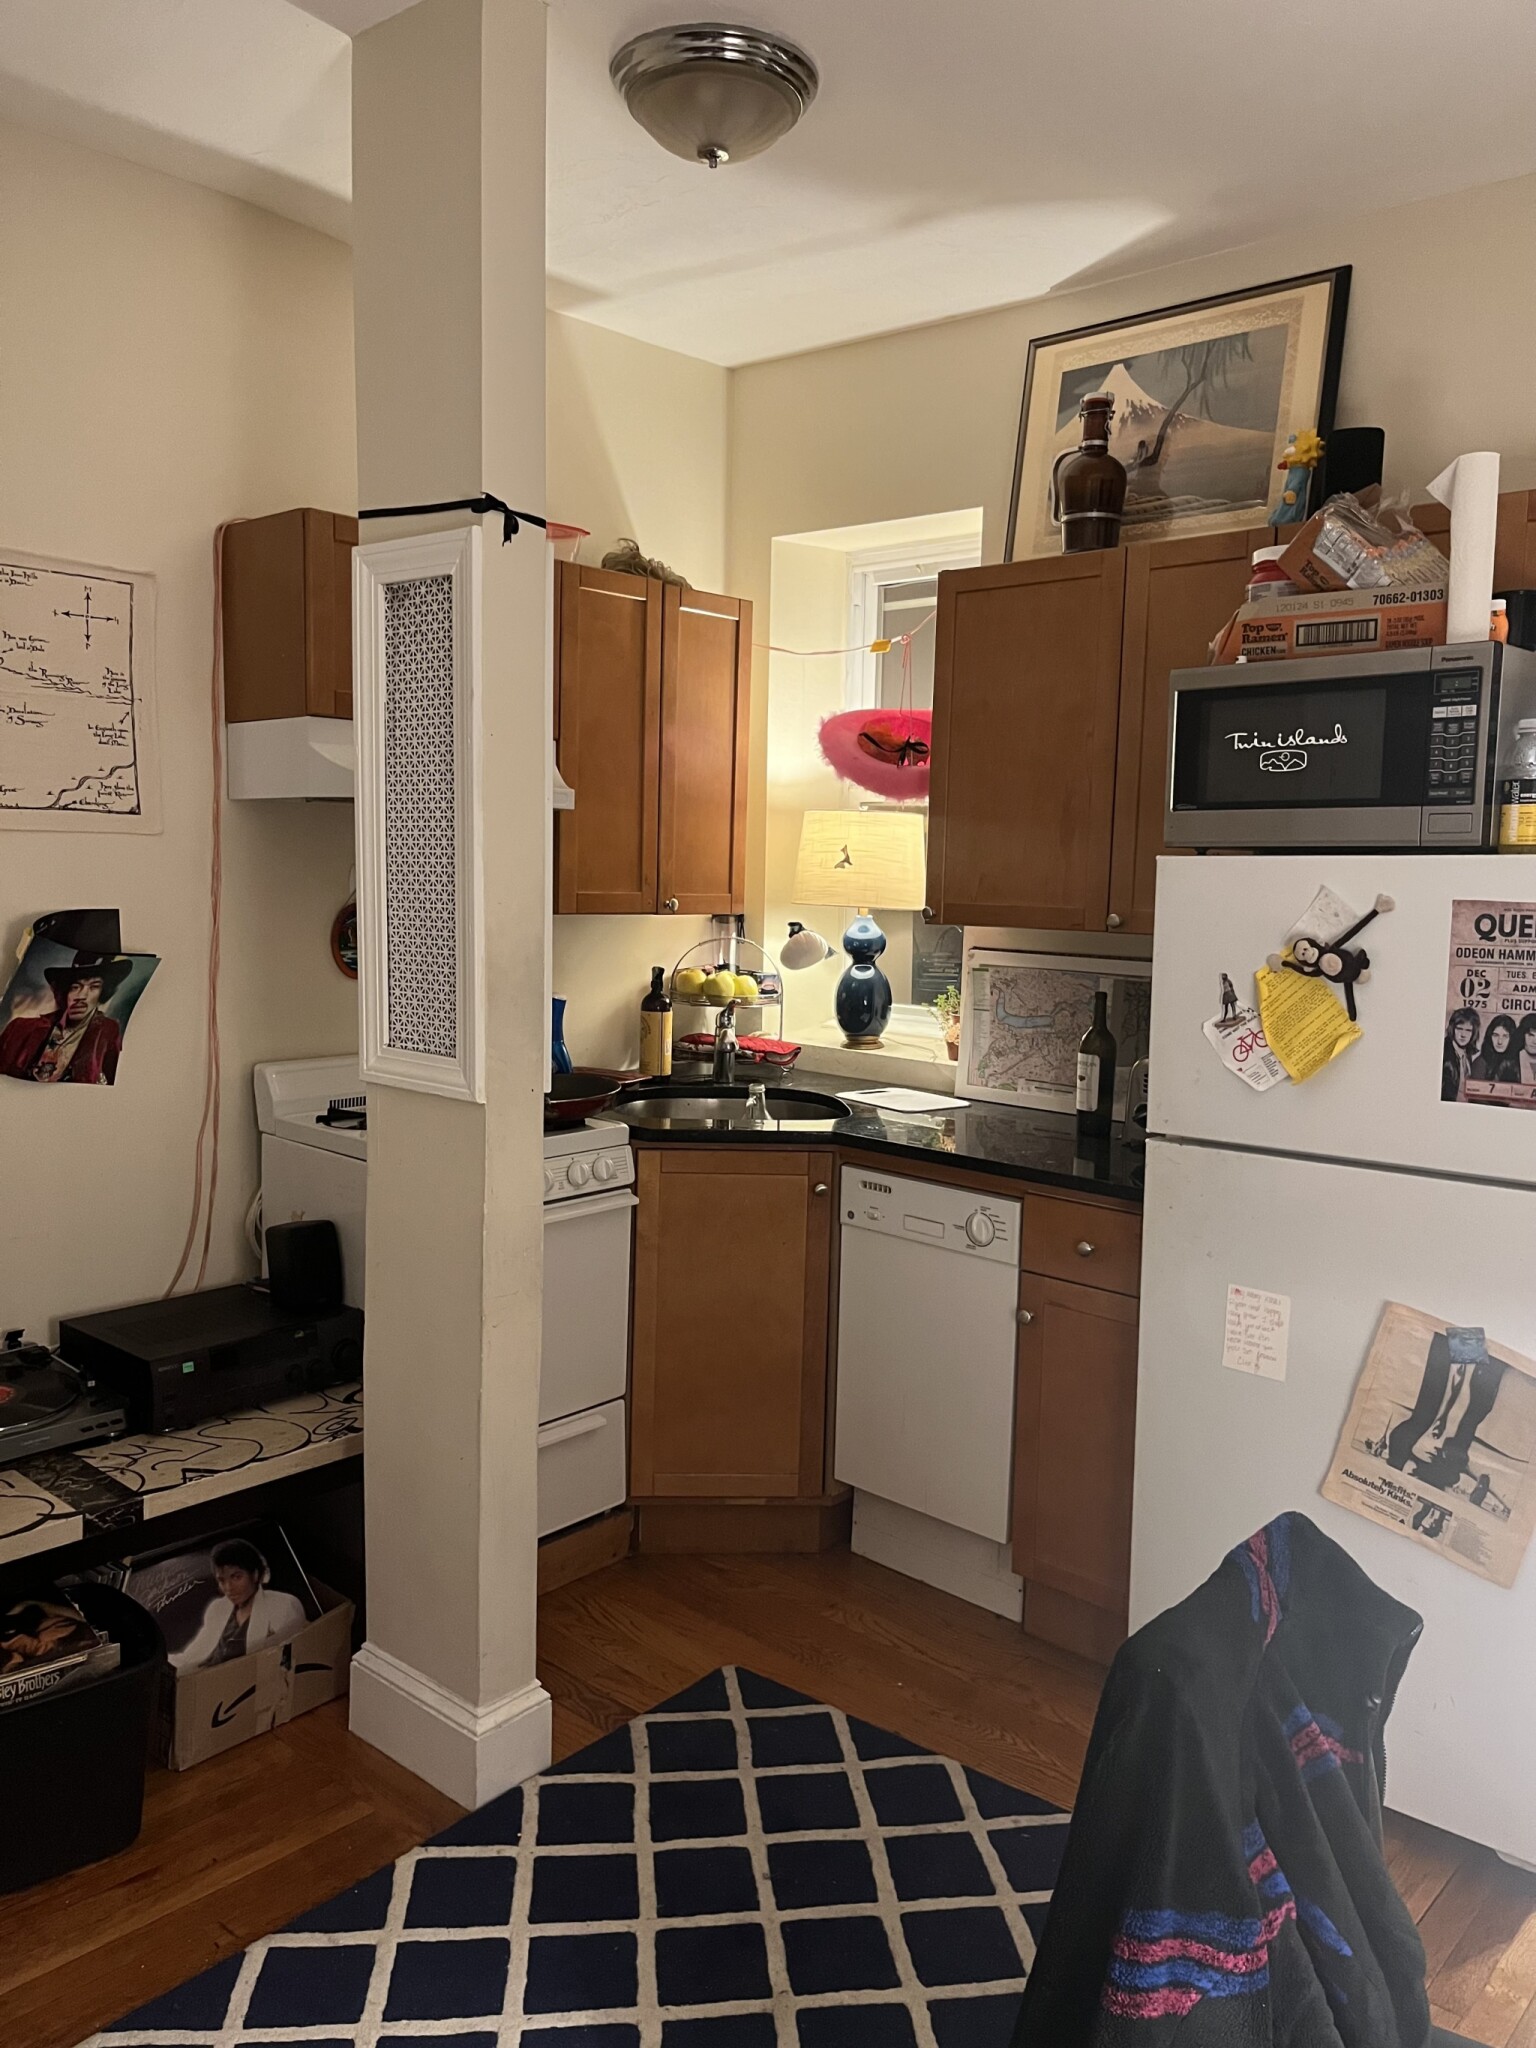 Photos of apartment on Westford St.,Boston MA 02134